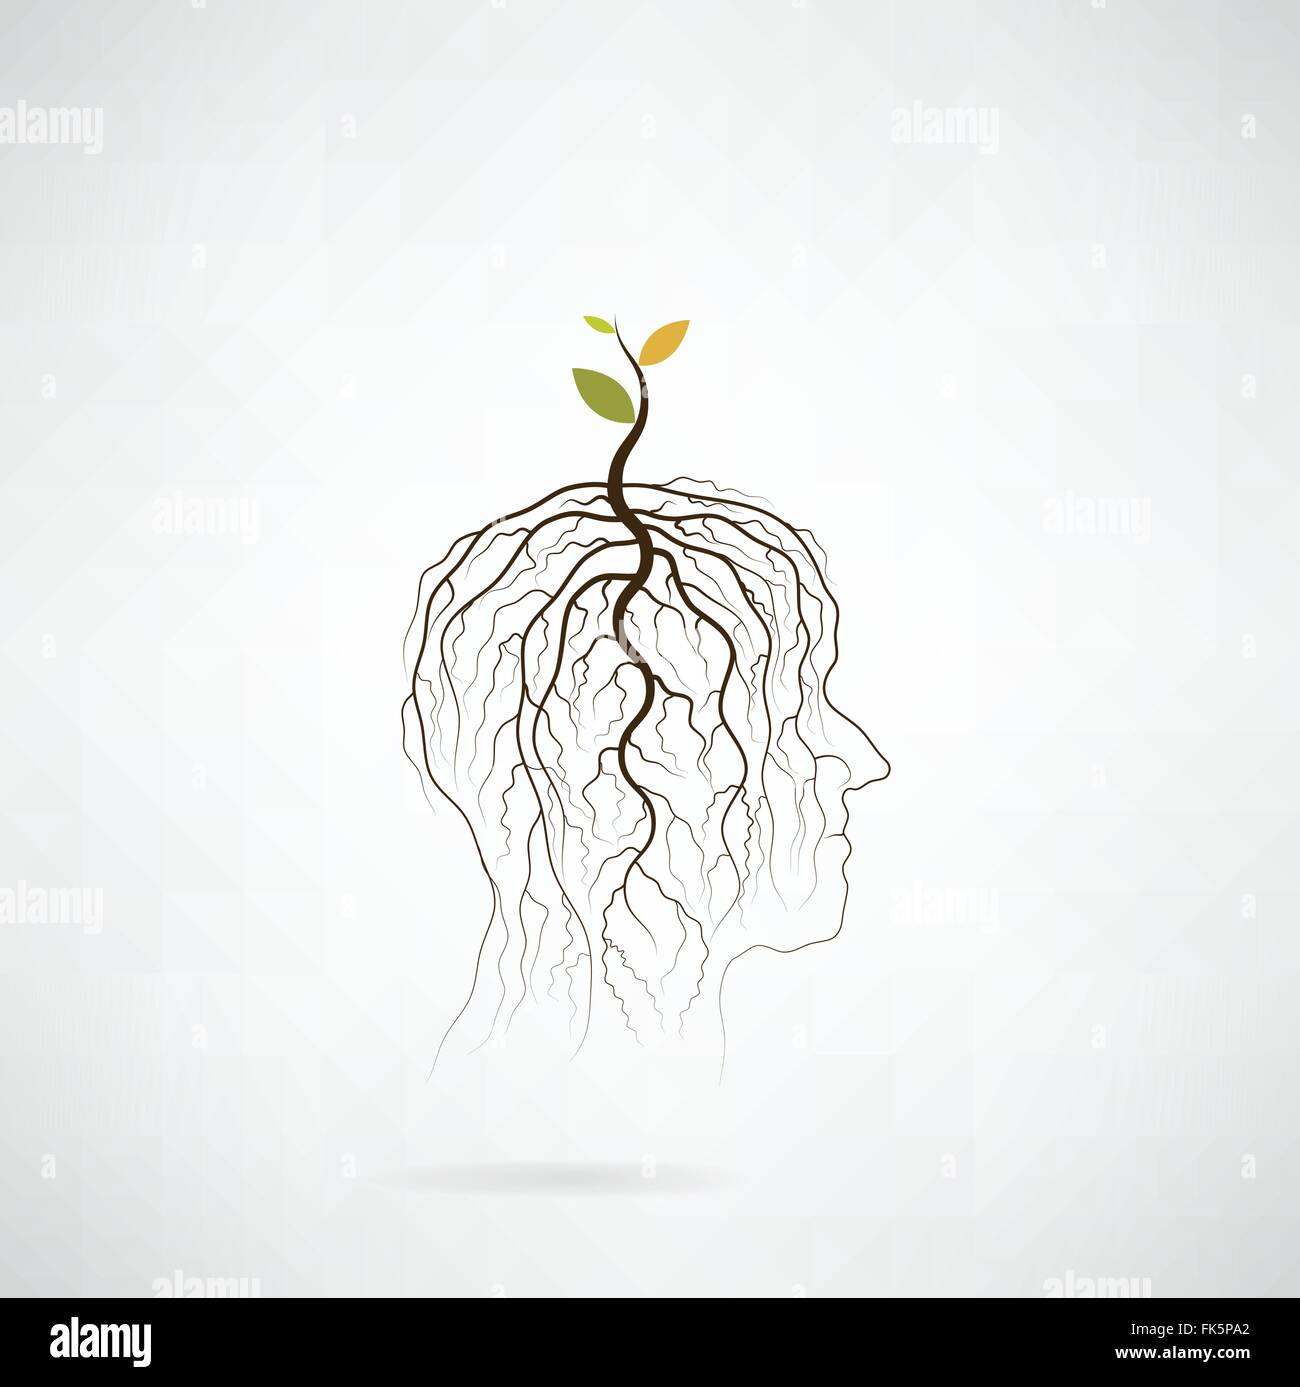 Denke, grüne Konzept. Baum der grüne Idee Shooting wachsen am menschlichen Kopf Symbol. Geschäfts- und grüne industrielle Idee. Vektor-illustration Stock Vektor